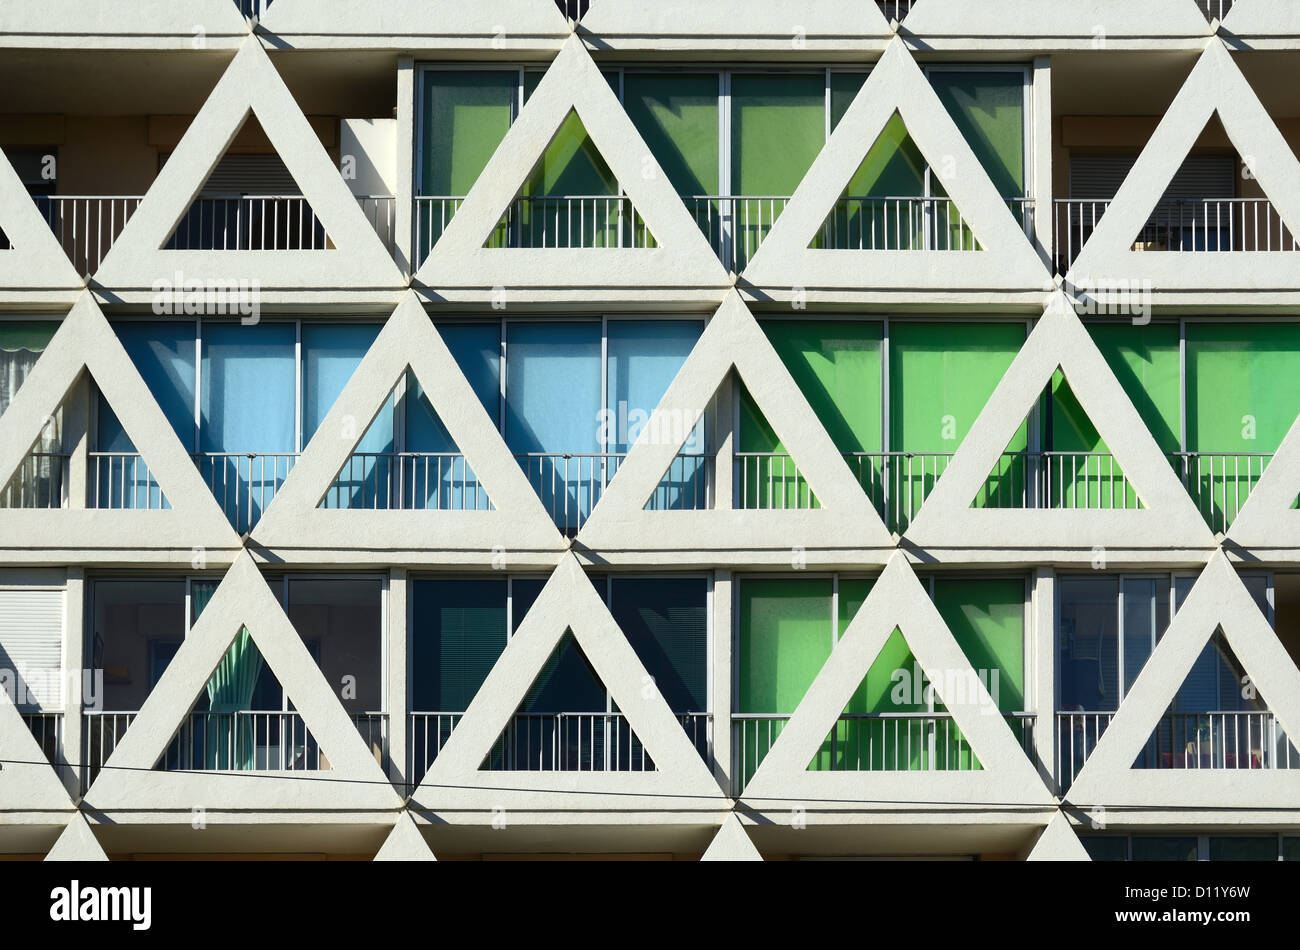 Façade triangulaire les voiles Blanches Holiday Apartments, Architecture moderne dans la station balnéaire de la Grande-Motte Hérault France Banque D'Images